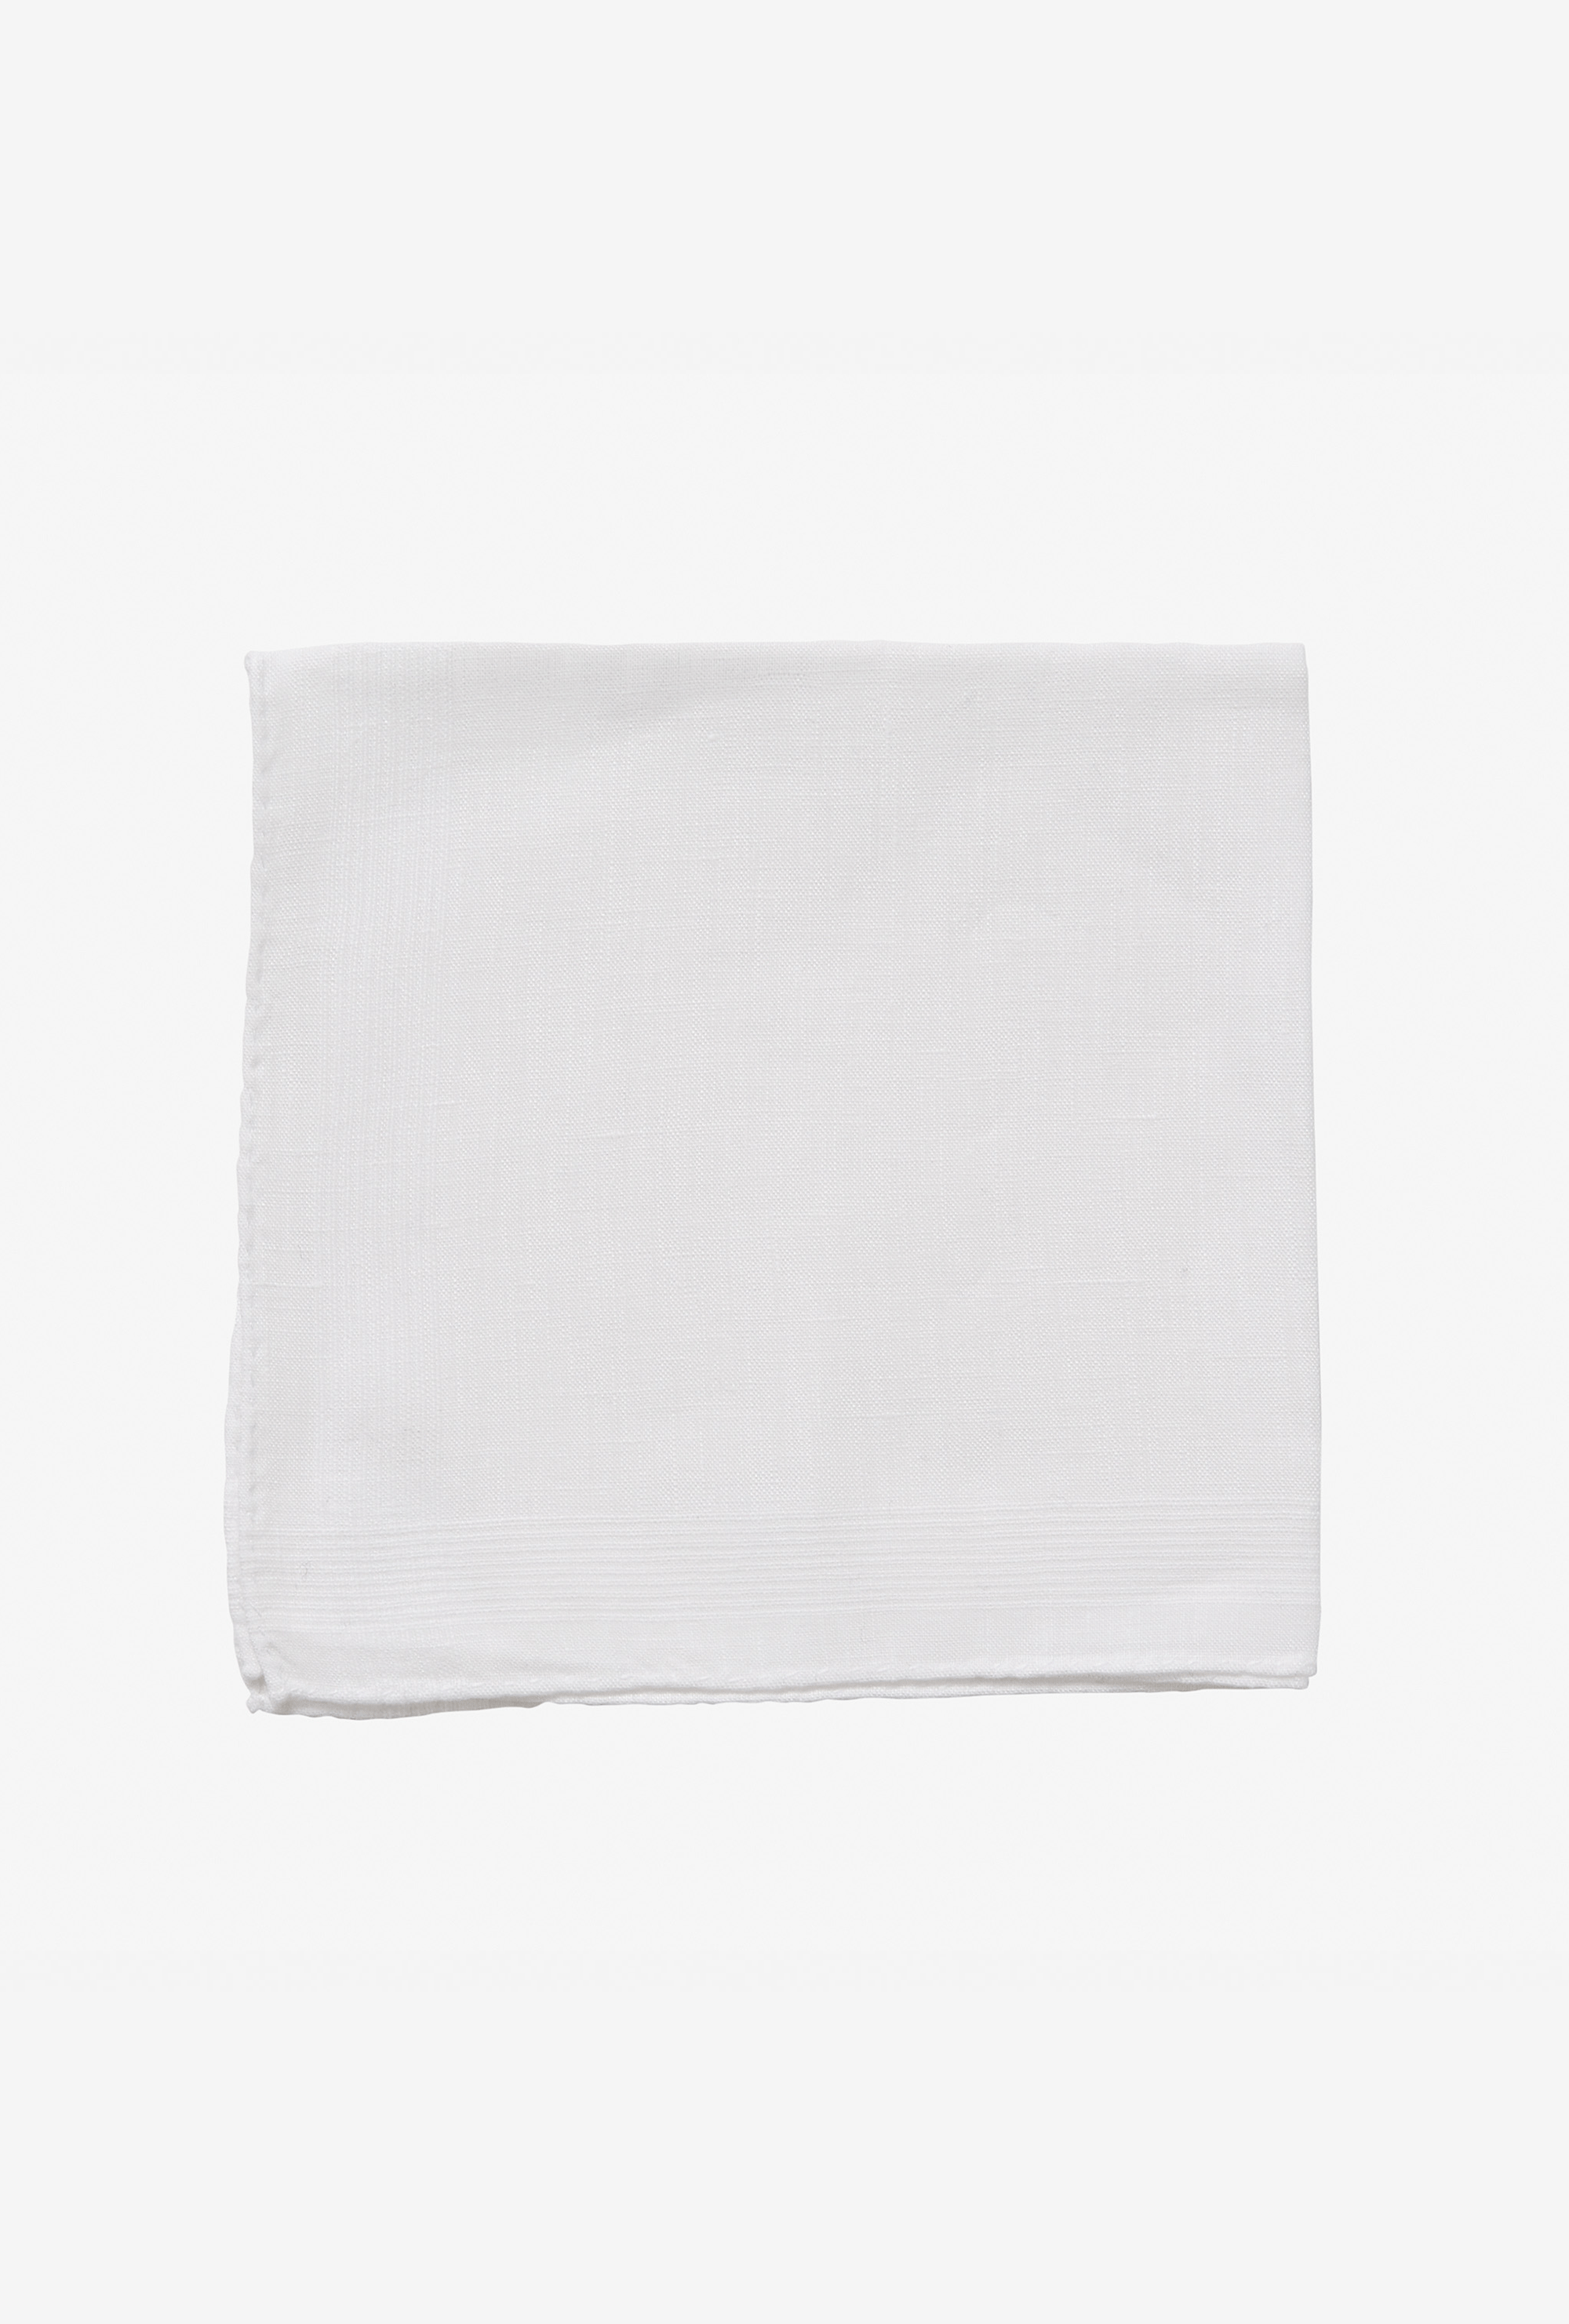 Pocket Square Linen White